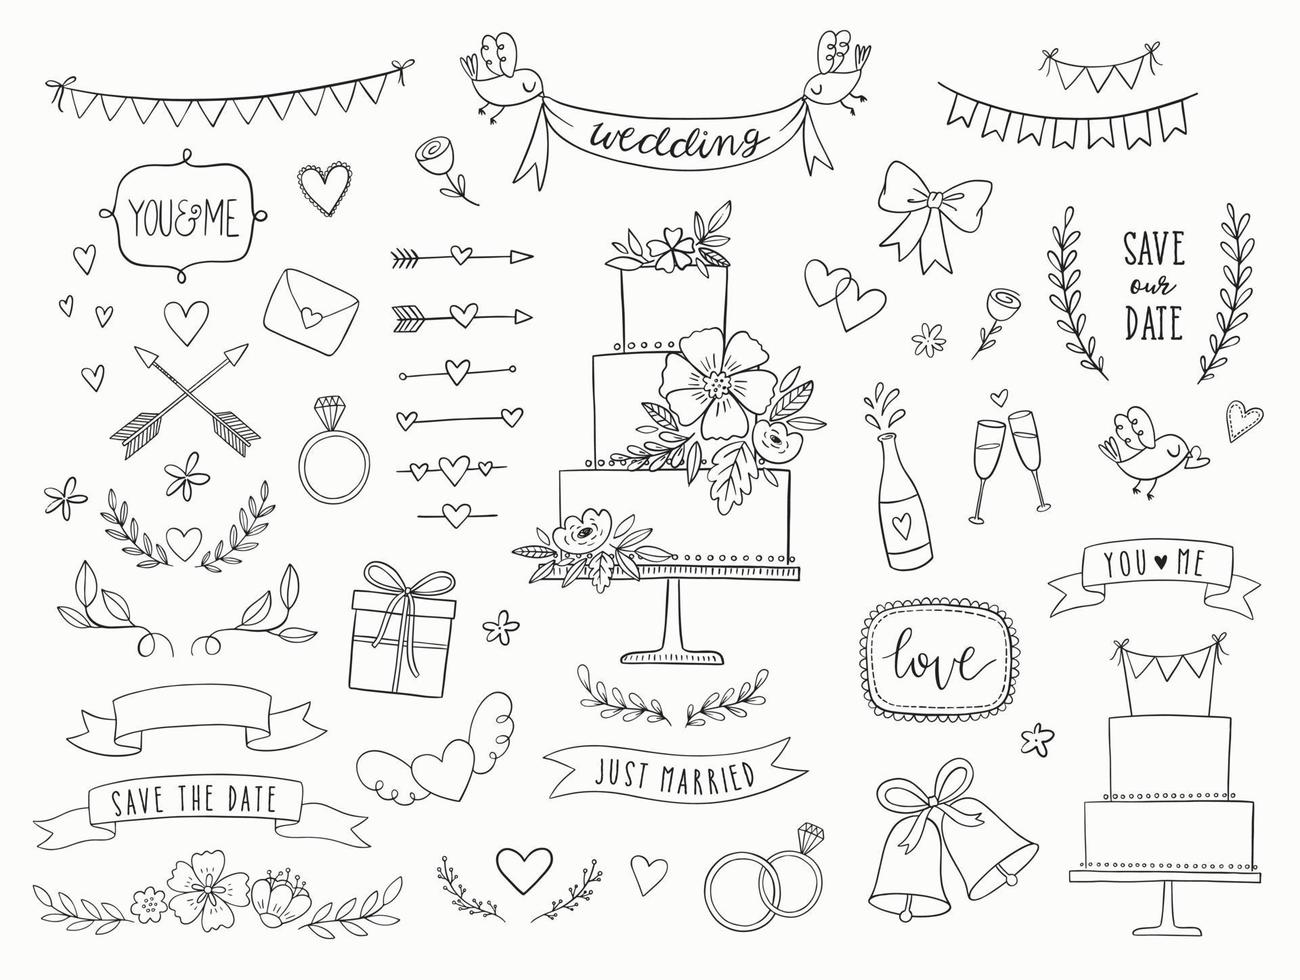 collezione di nozze doodle disegnato a mano. icone di nozze vettoriali, illustrazioni ed elementi di design per inviti, biglietti di auguri, poster. frecce, cuori, alloro, ghirlande, nastri, fiori, stendardi. vettore